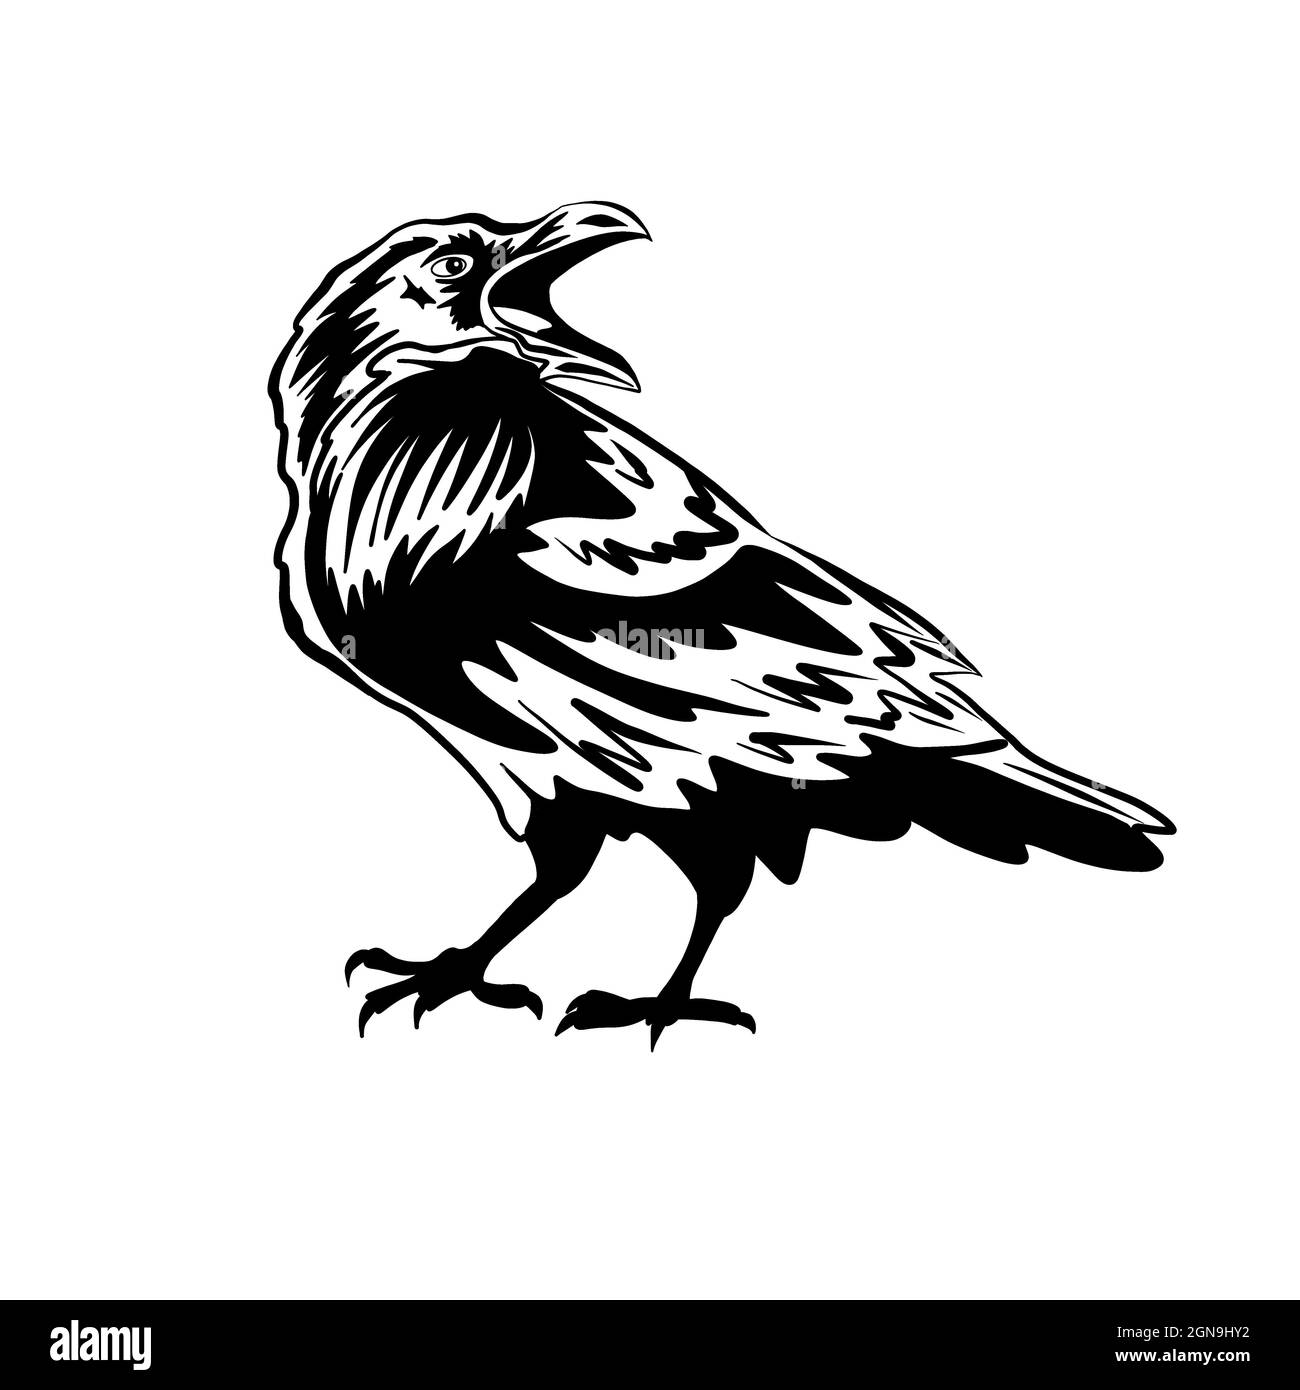 Noir corbeau ou corbeau. La silhouette d'un oiseau sur un fond blanc. Le symbole de Halloween et le cimetière. Prédateur et éliminateur Banque D'Images